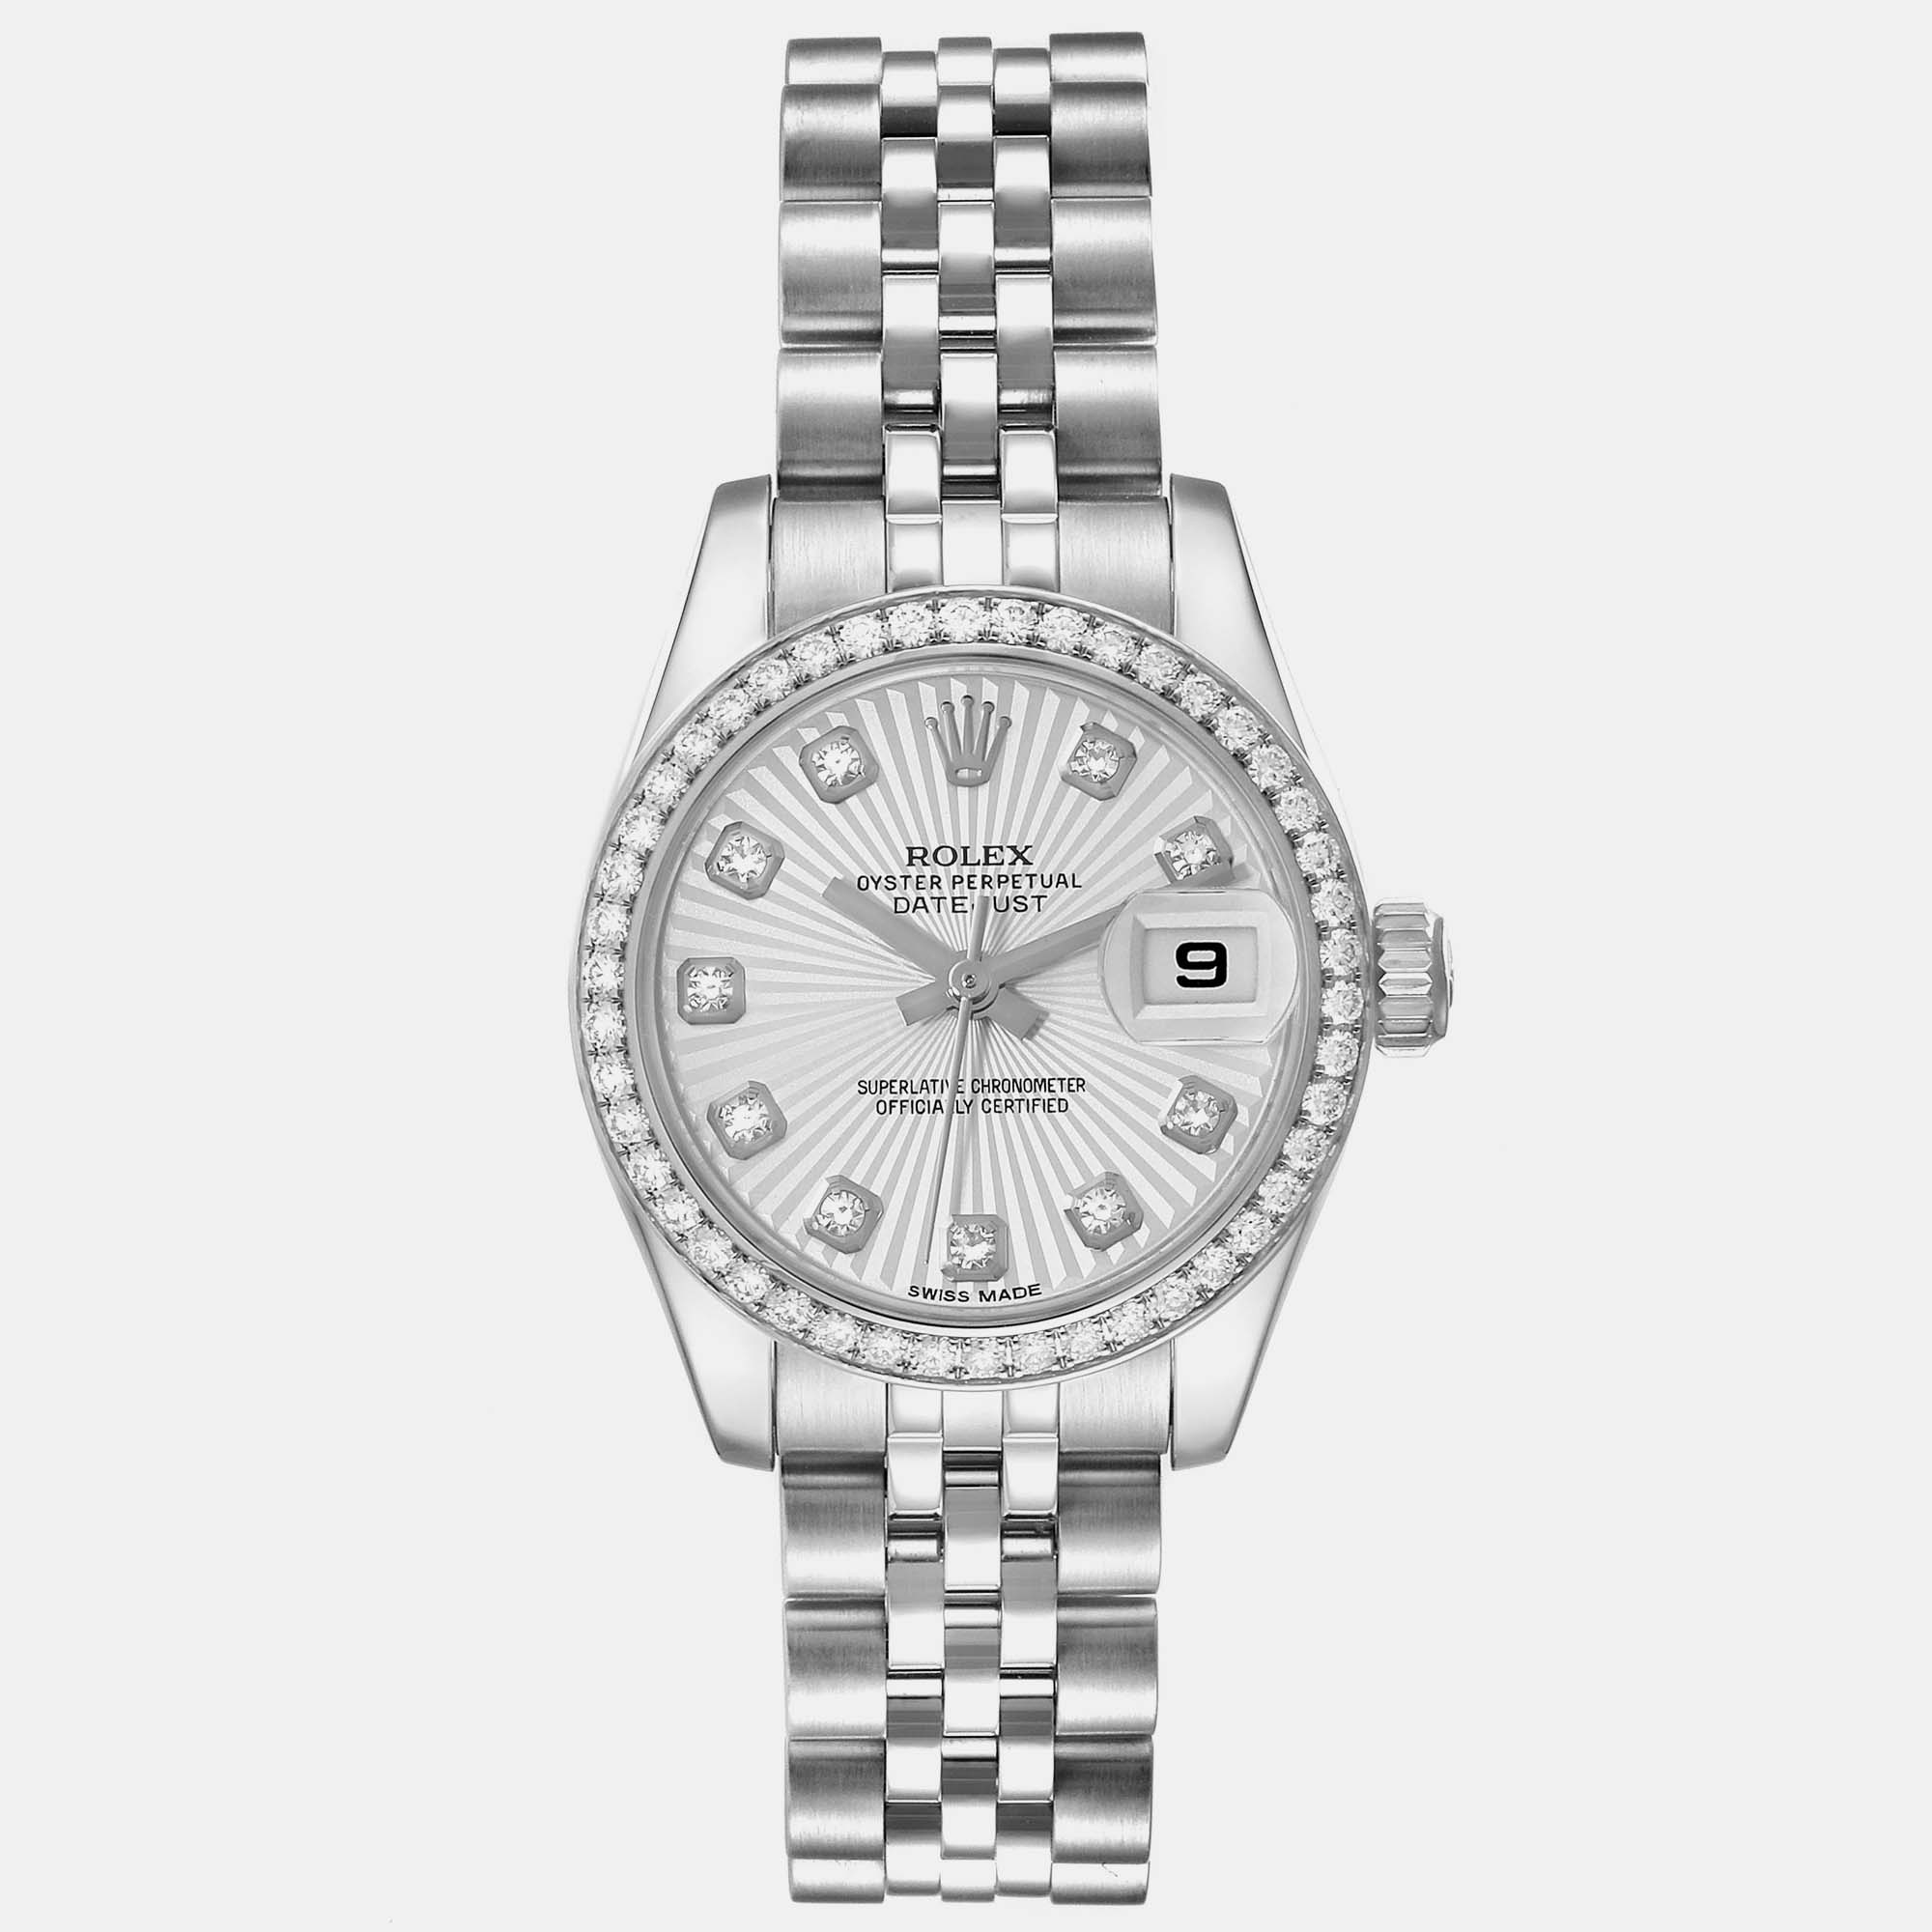 Rolex datejust 26 steel white gold sunburst dial diamond ladies watch 179384 26 mm